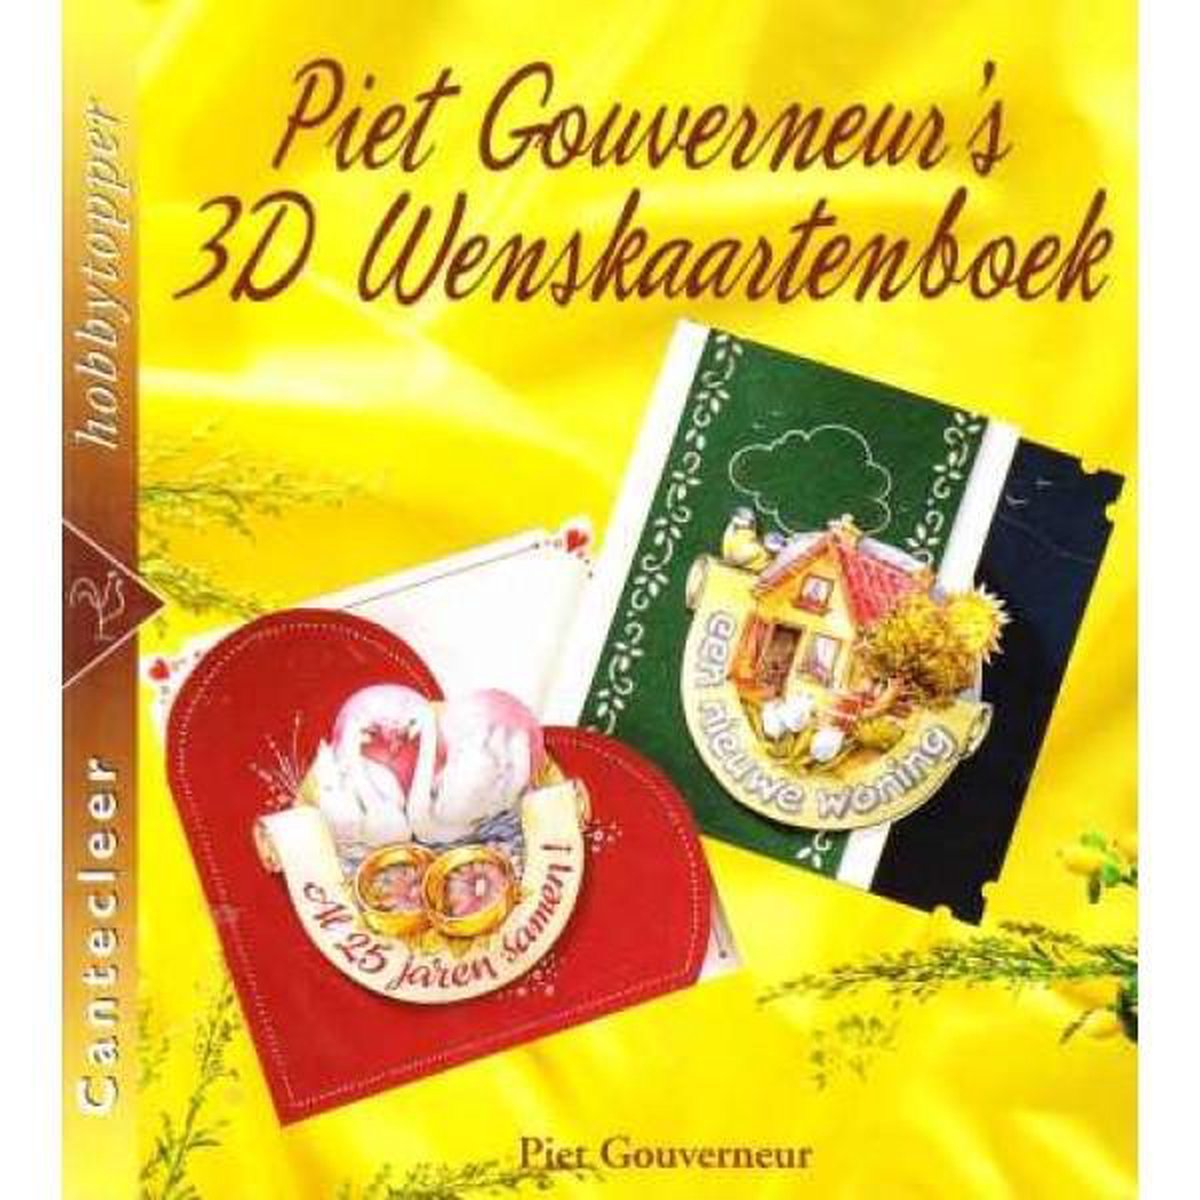 Piet Gouverneur's 3D wenskaartenboek